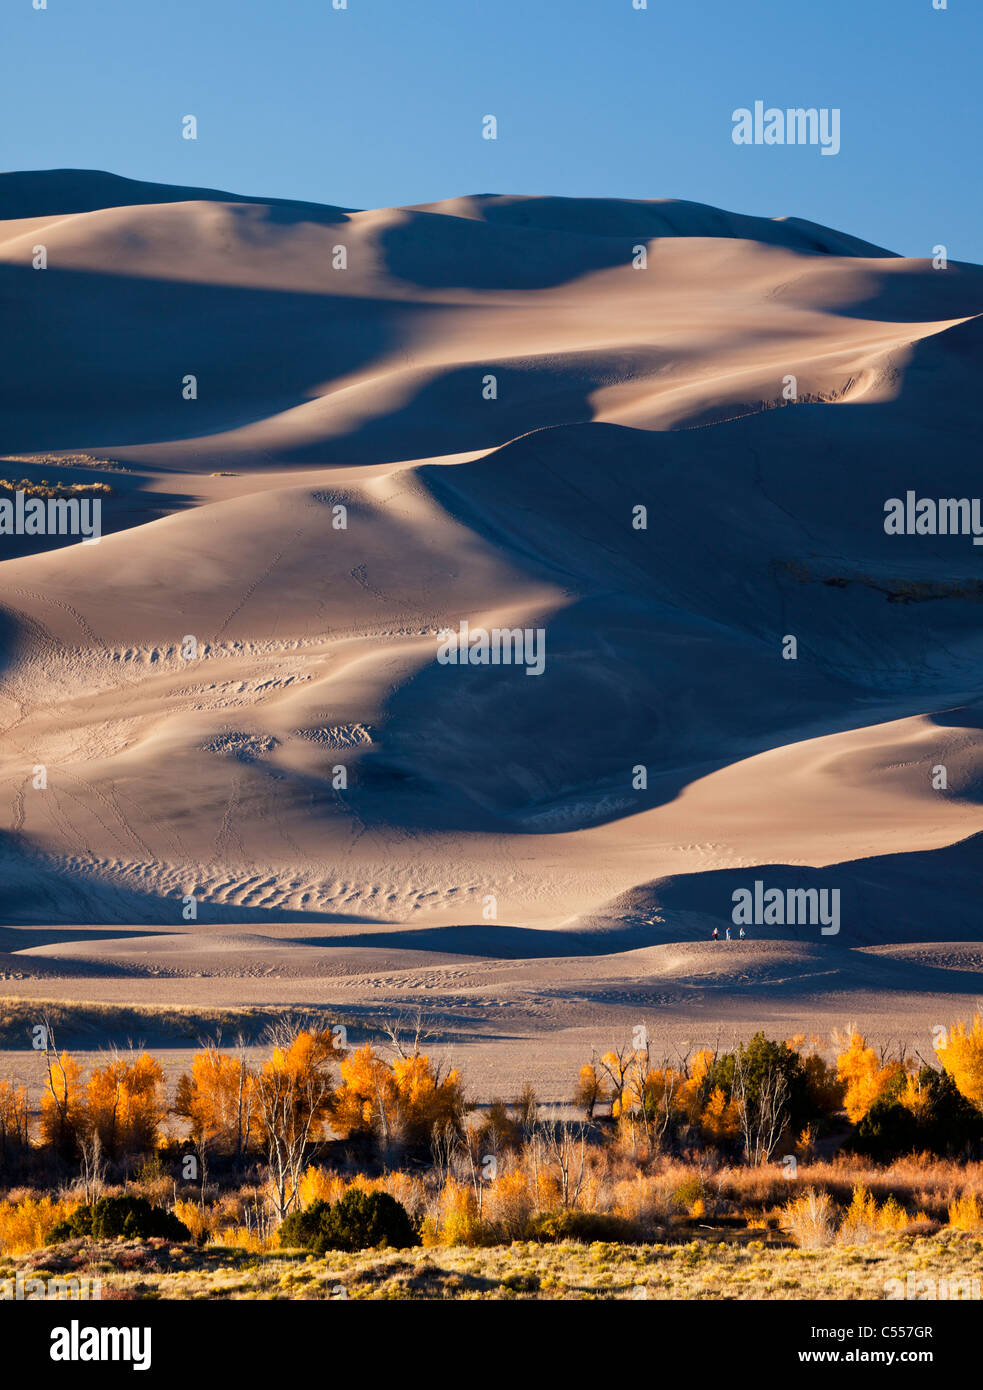 Panorama des dunes de sable de Great Sand Dunes National Monument en automne avec le jaune des arbres cottonwood, perspective petit peuple avant-plan Banque D'Images